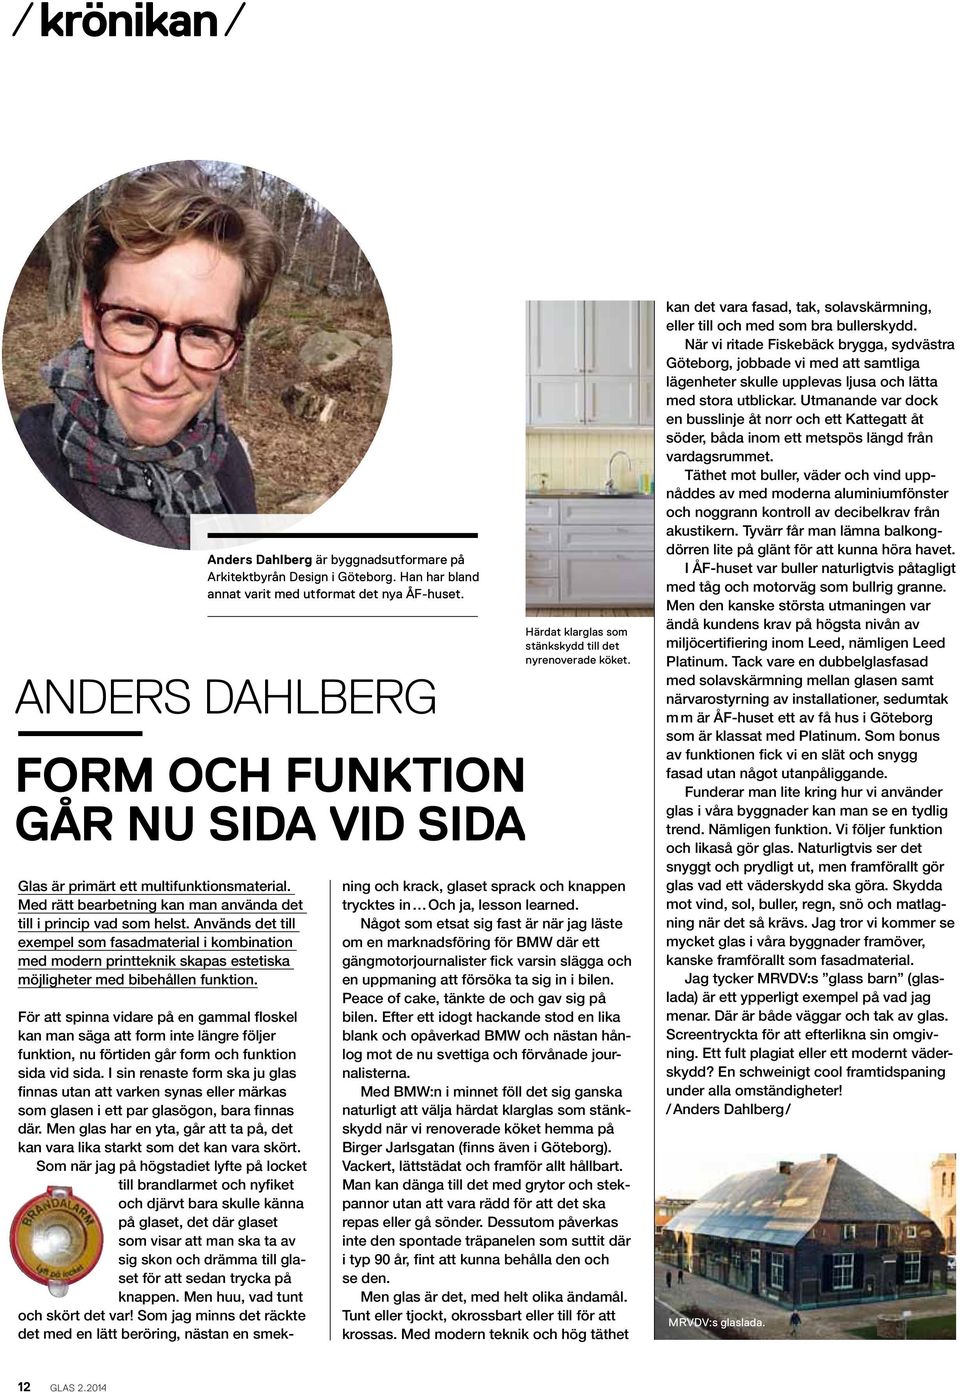 Anders Dahlberg är byggnadsutformare på Arkitektbyrån Design i Göteborg. Han har bland annat varit med utformat det nya ÅF-huset.